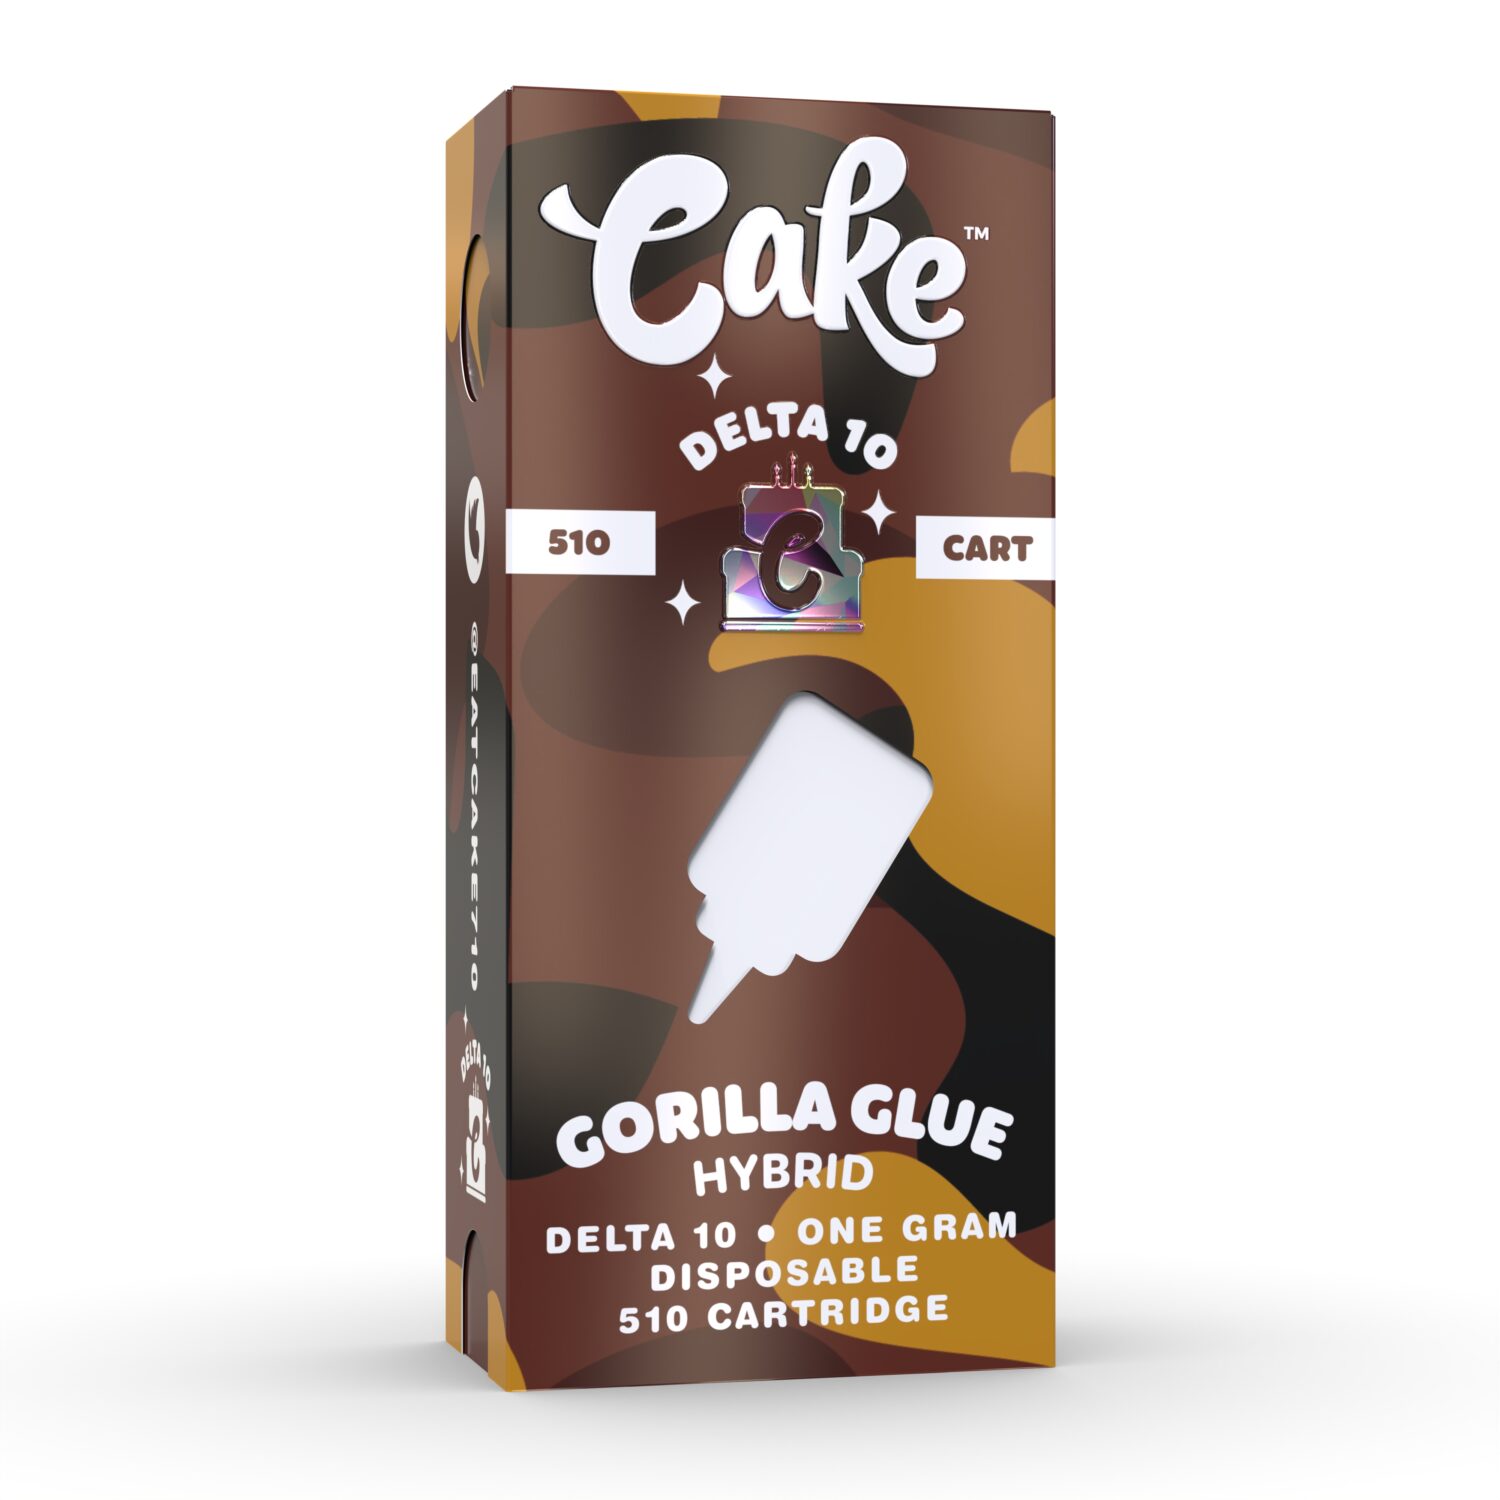 Cake-Delta-10-Cartridge-gorilla-glue-1-scaled-1.jpg